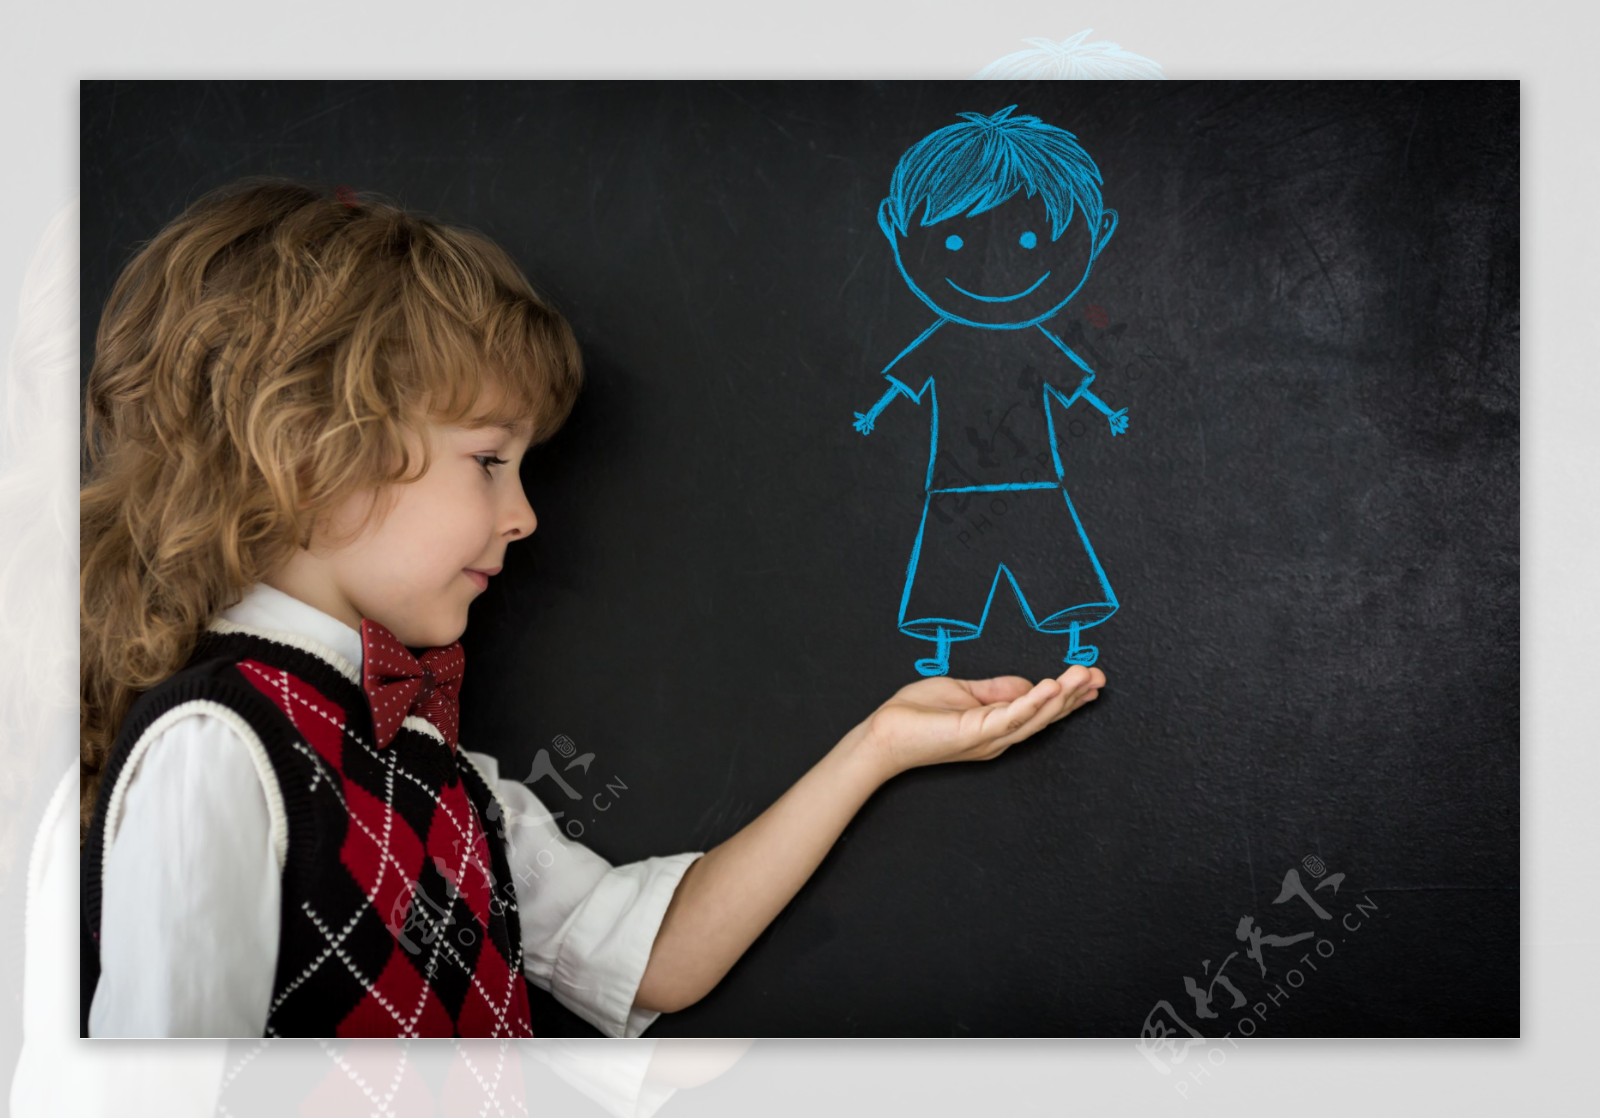 黑板上的卡通人物和小男孩图片